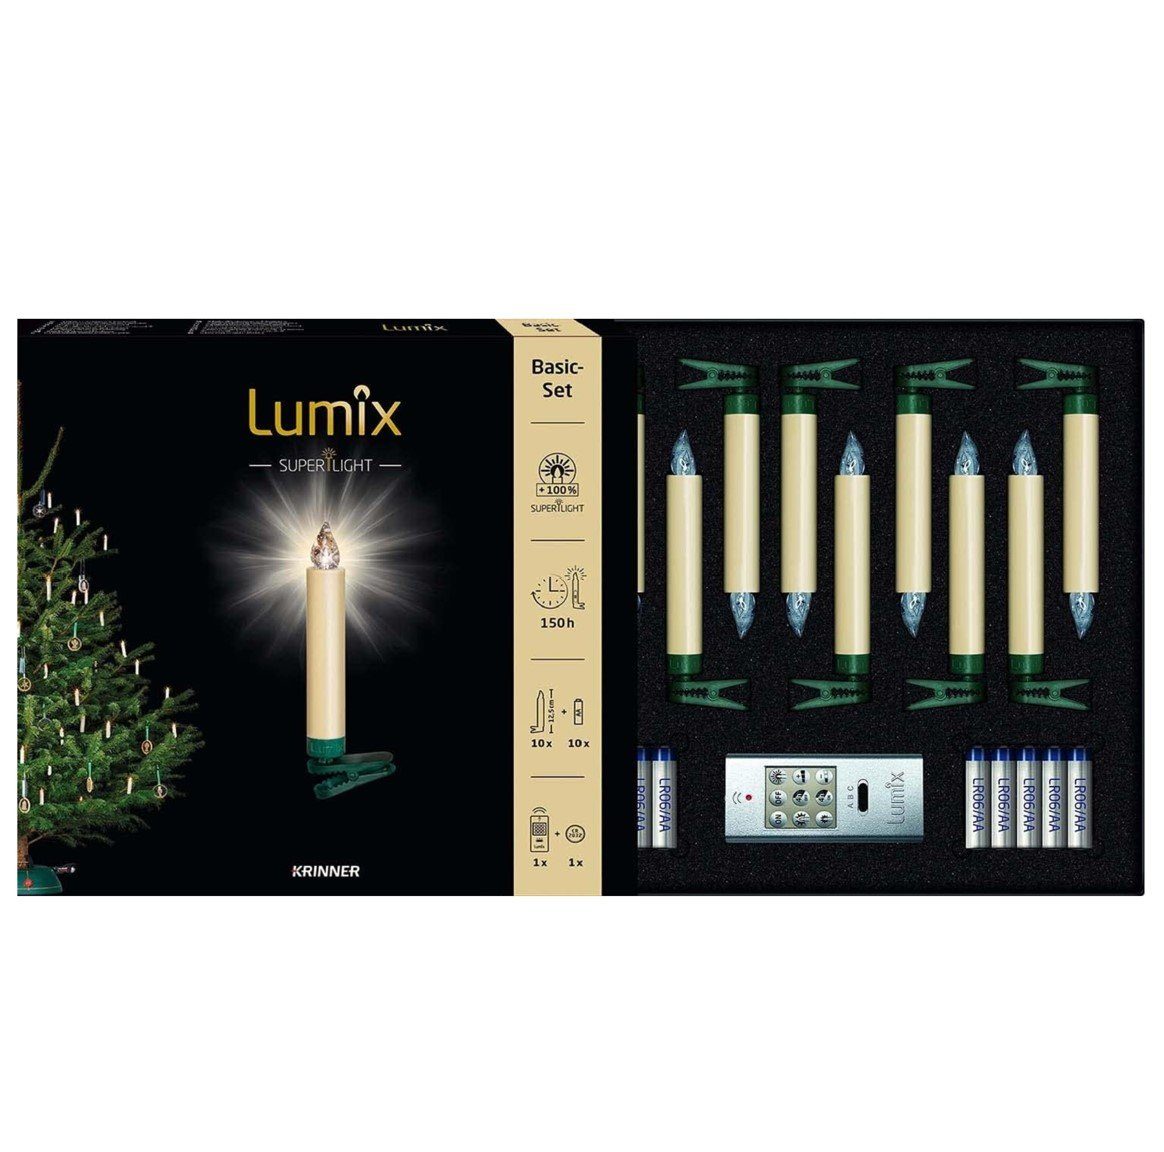 Lumix Power LED Christbaumständer kabellose Superlight, Christba Elfenbein Krinner 74422 KRINNER